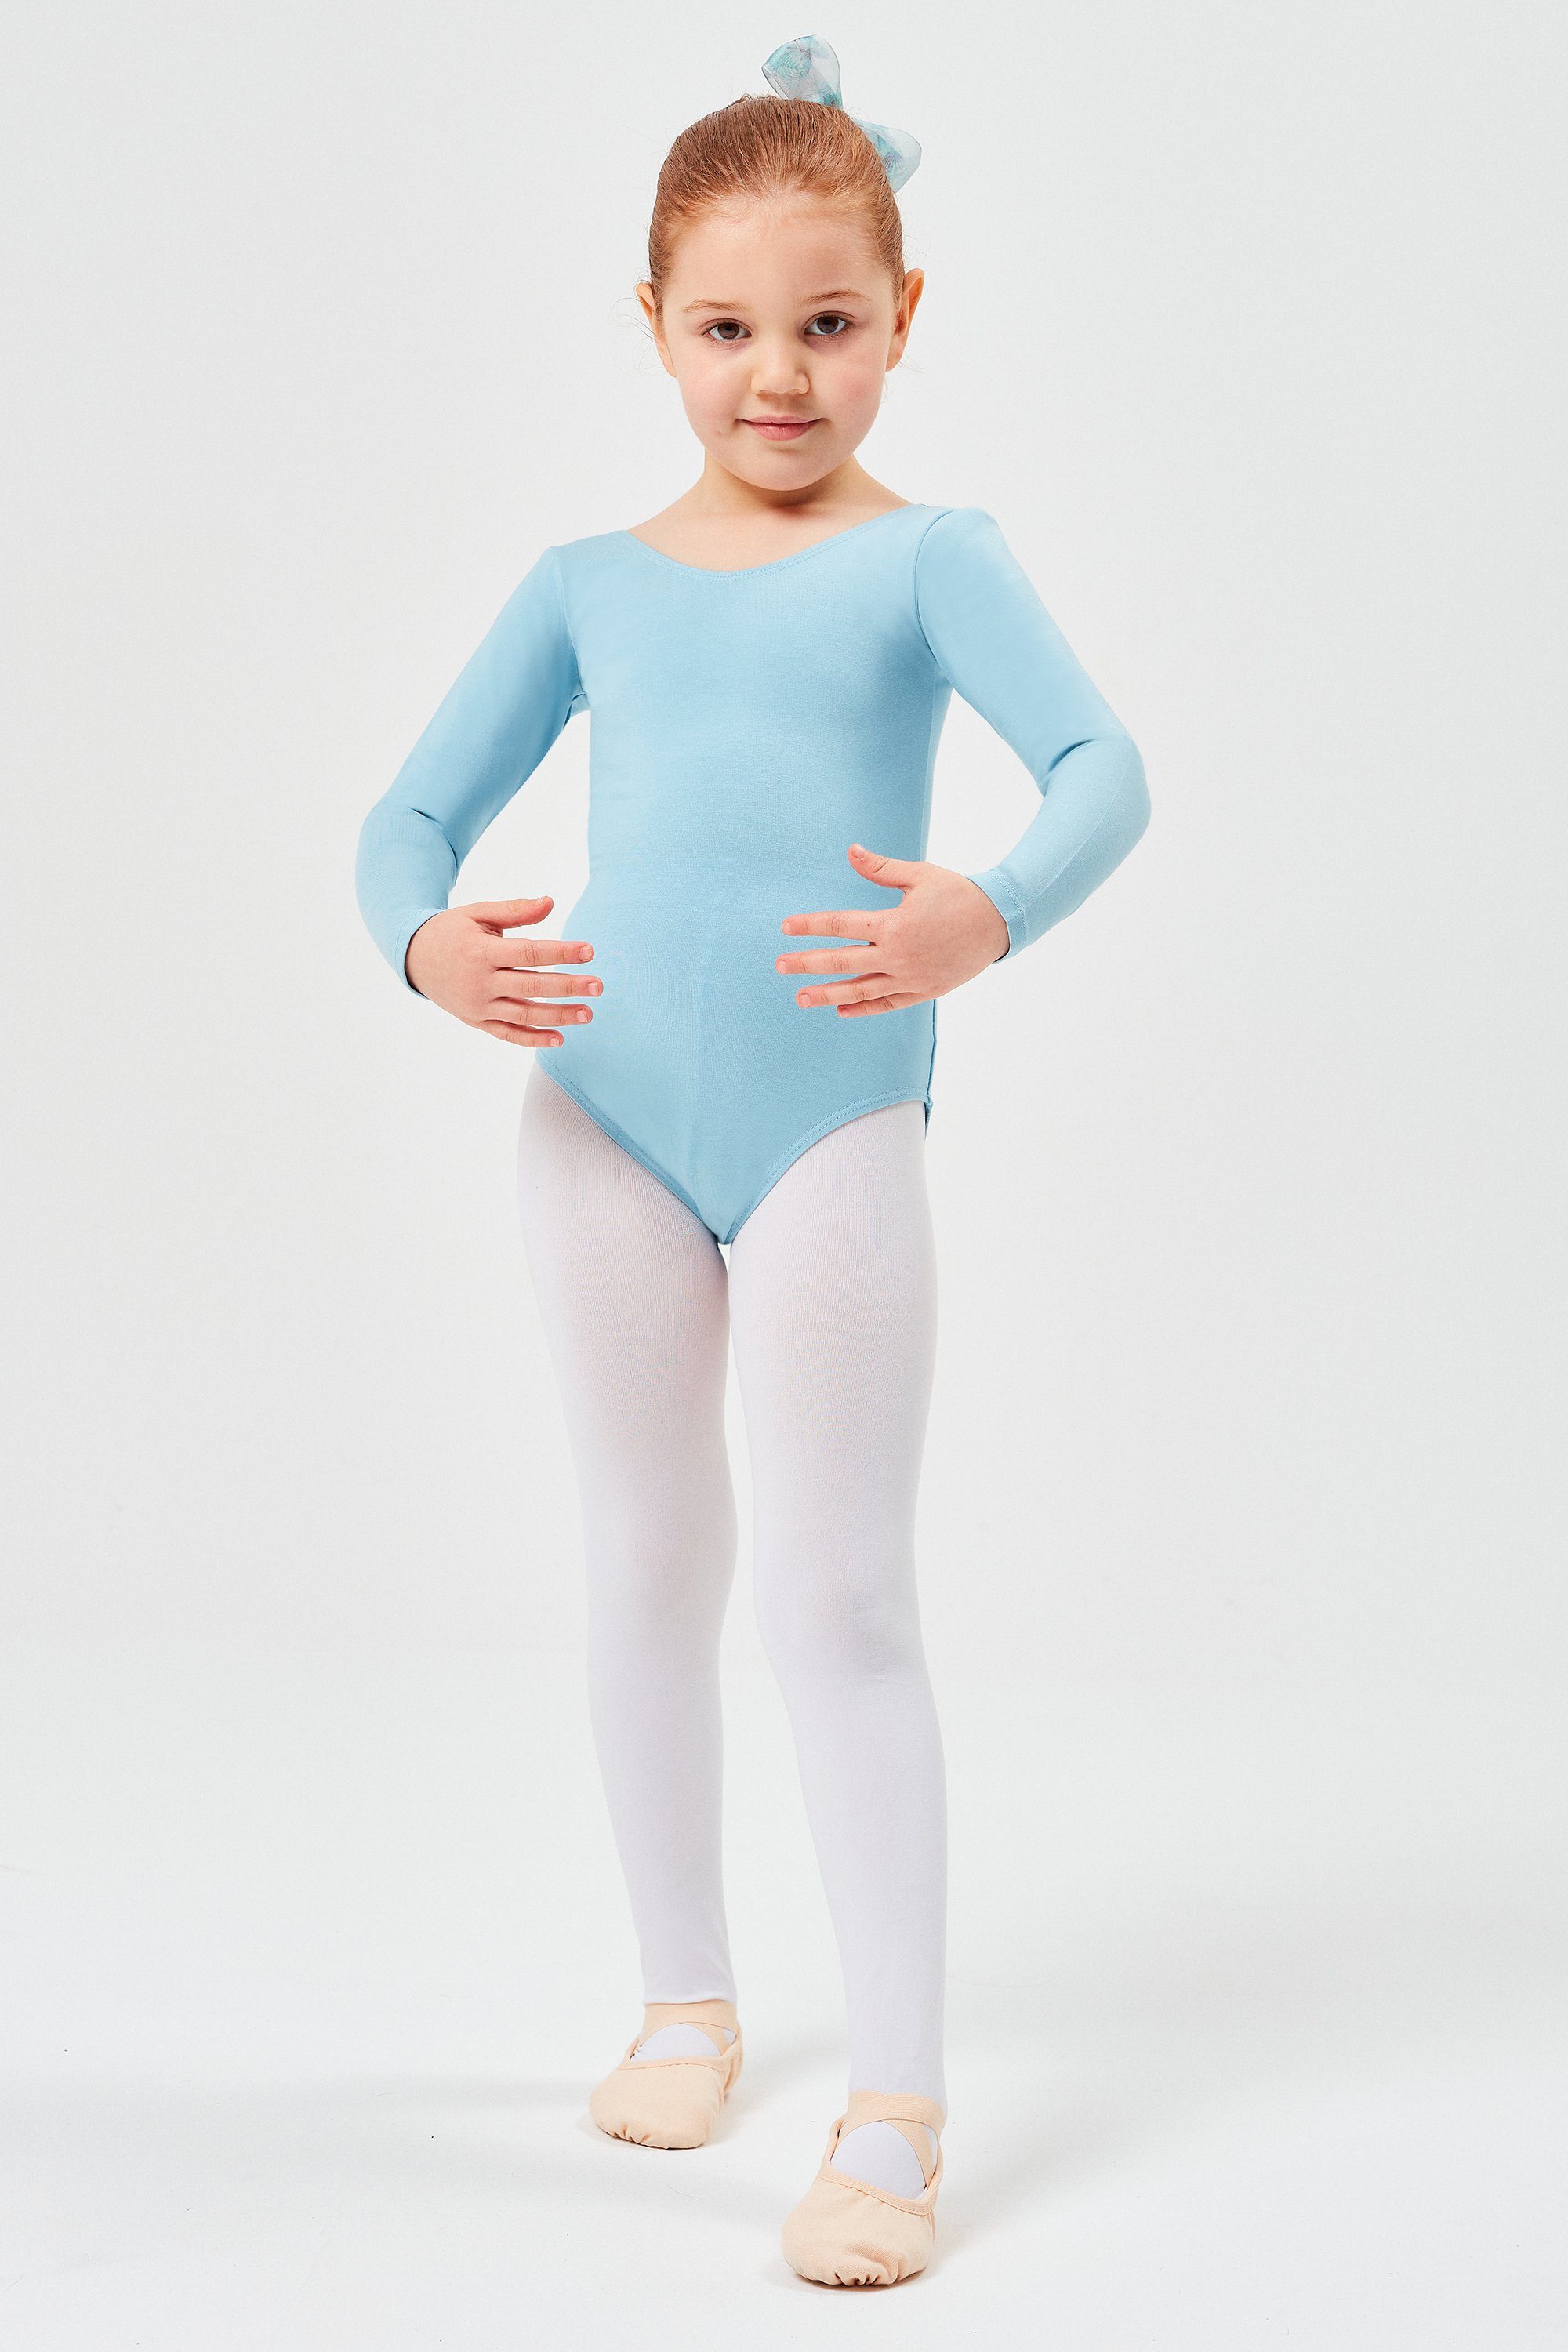 tanzmuster weichem Kinder Ballettbody fürs Ballett hellblau aus Lilly Body Baumwollmischgewebe Trikot Langarm